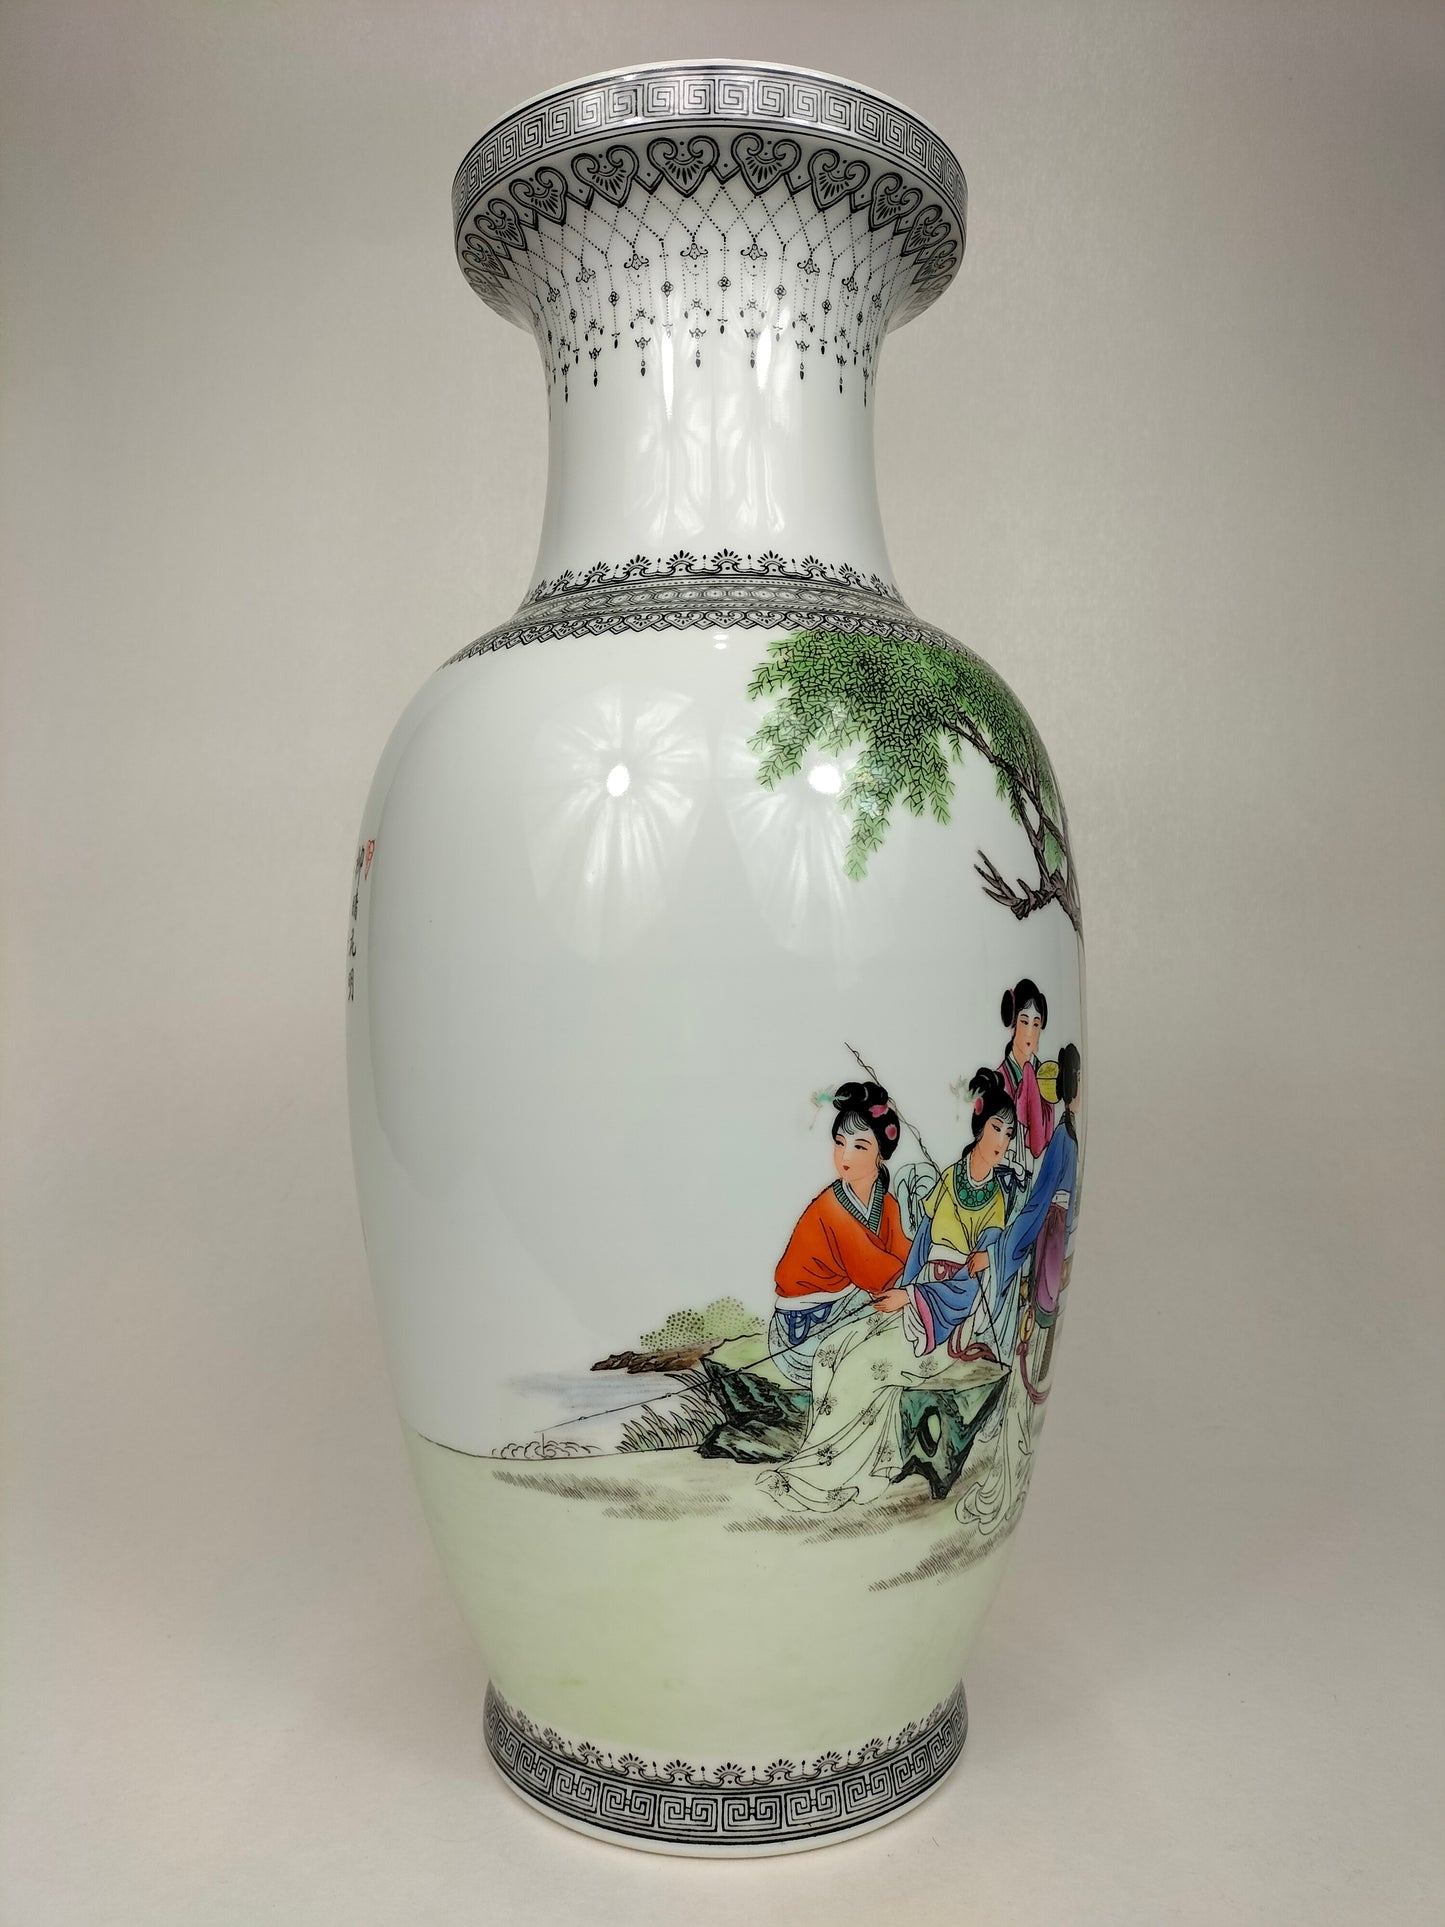 大型中国彩绘花瓶，饰有花园场景 // 景德镇 - 20 世纪